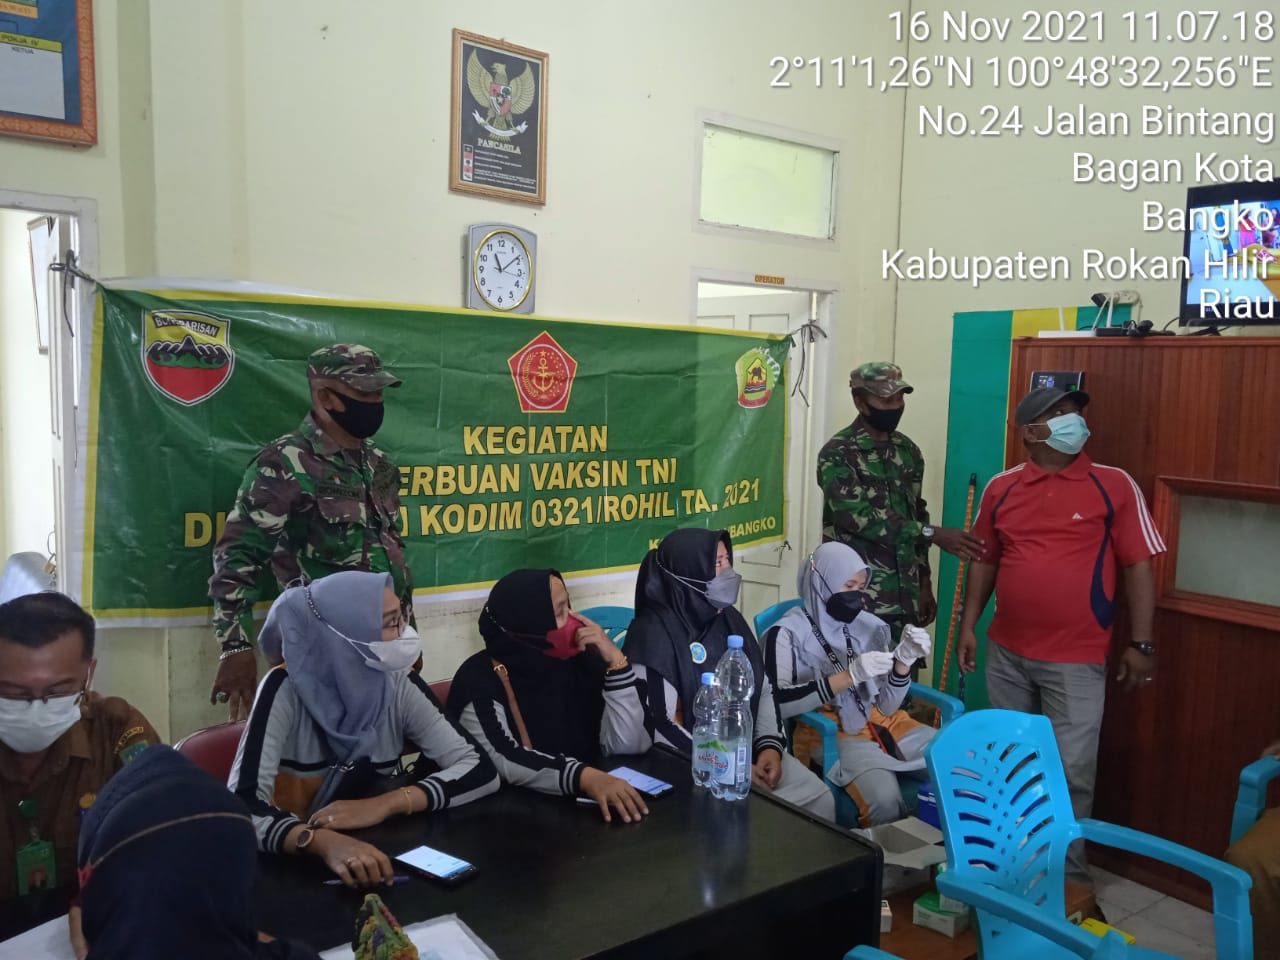 Kodim 0321/Rohil kerjasama Dengan Puskesmas Serbuan Vaksinasi TNI